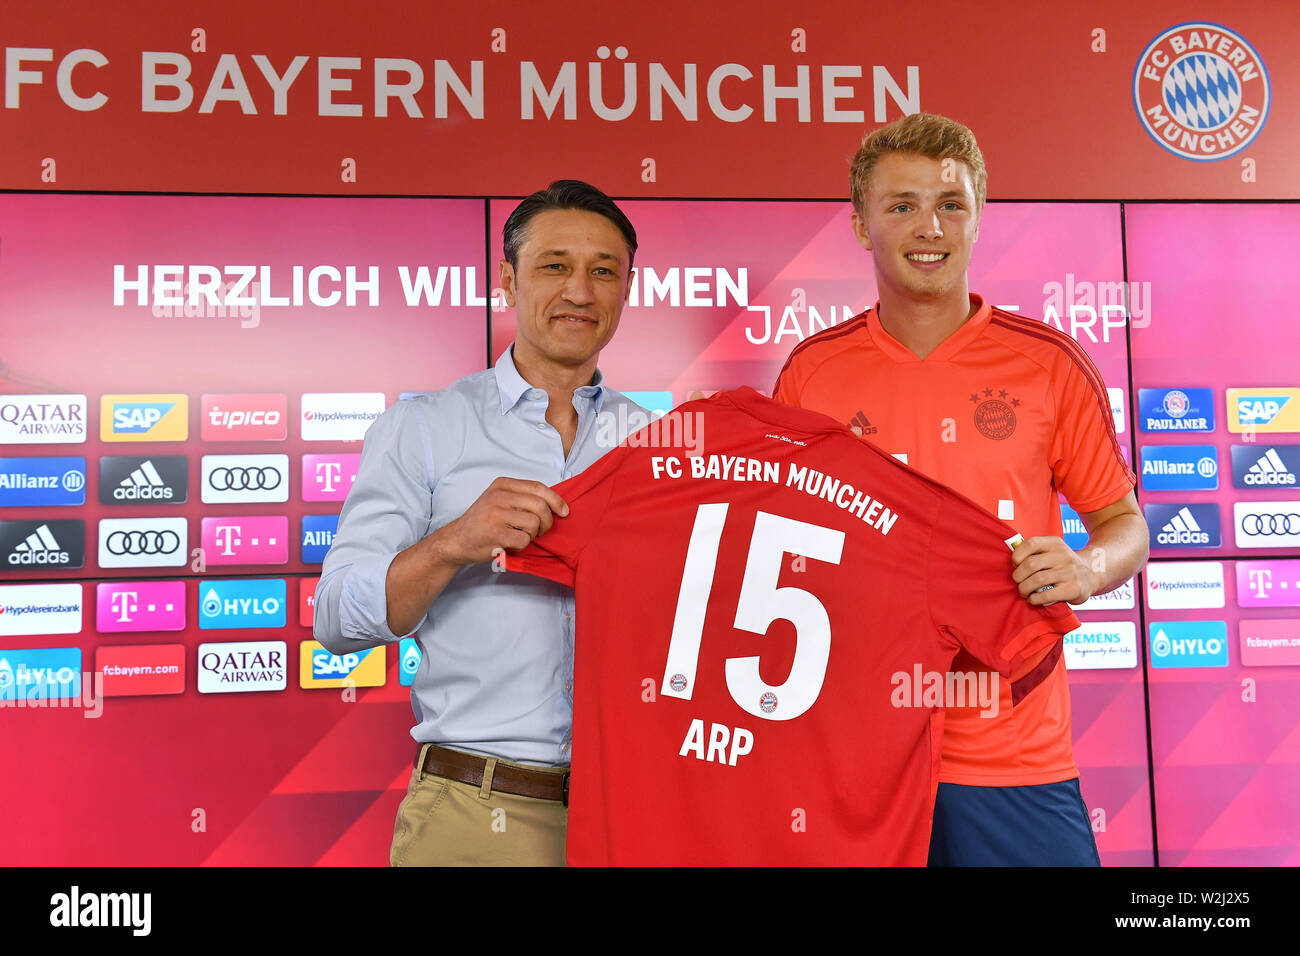 Plata cómodo Cada semana Jann Fiete ARP (FC Bayern Munich) y Niko Kovac (entrenador del Bayern  Munich) muestran la Trikoz con el número 15. Presentación, presentación,  conferencia de prensa Jann Fiete ARP (FC Bayern Munich). El